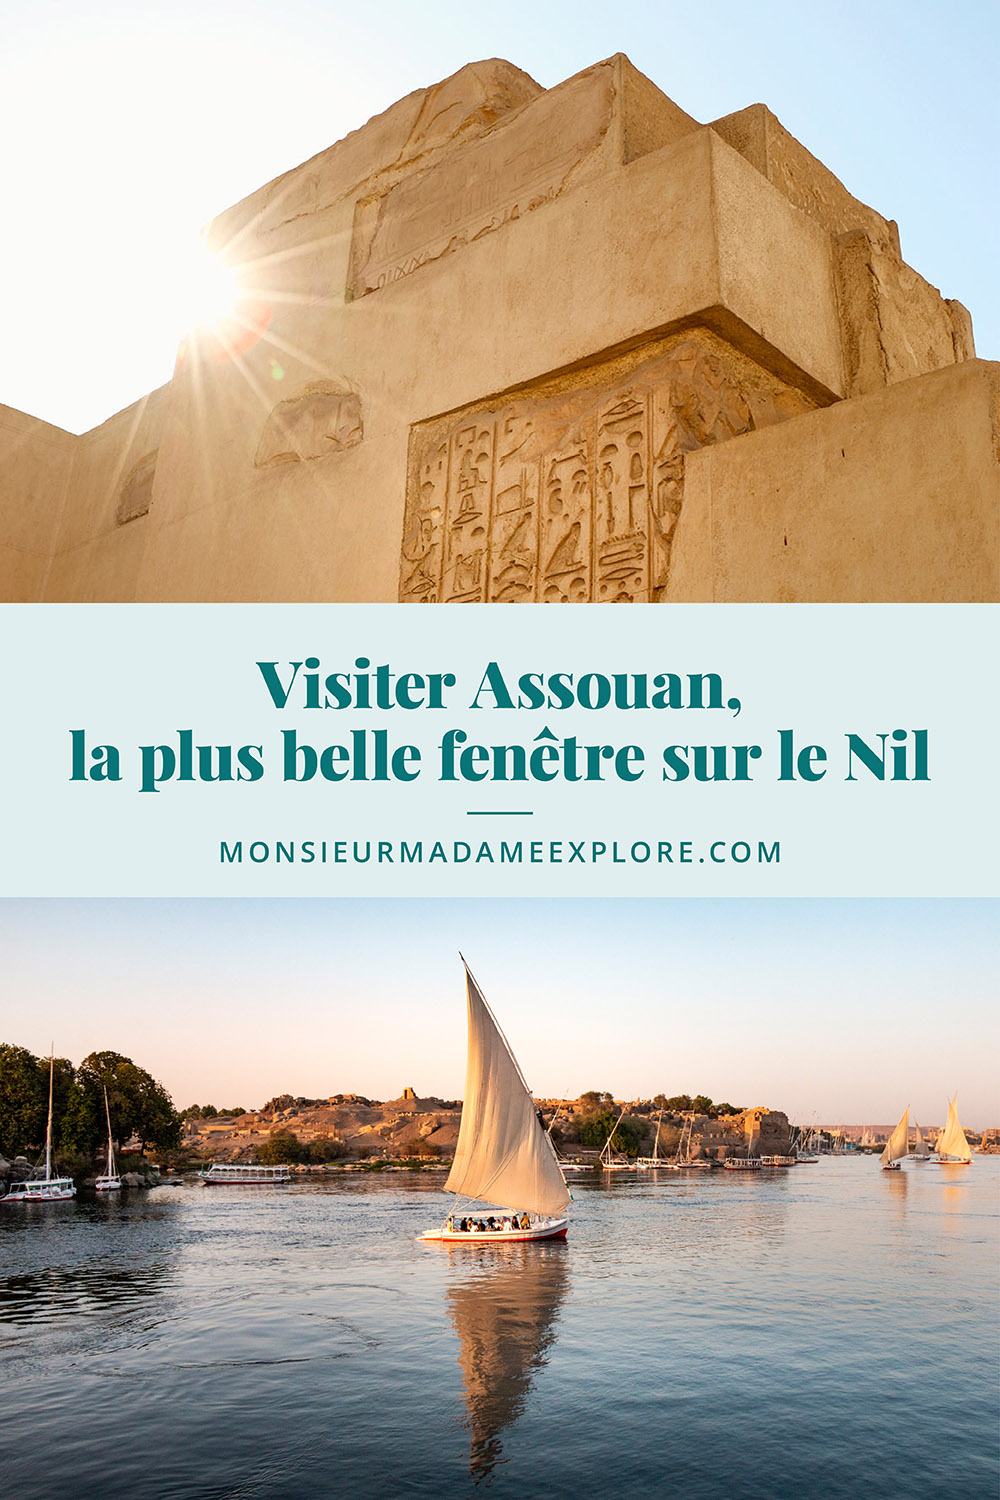 Visiter Assouan, la plus belle fenêtre sur le Nil, Monsieur+Madame Explore, Blogue de voyage, Égypte / What to do in Aswan, Egypt